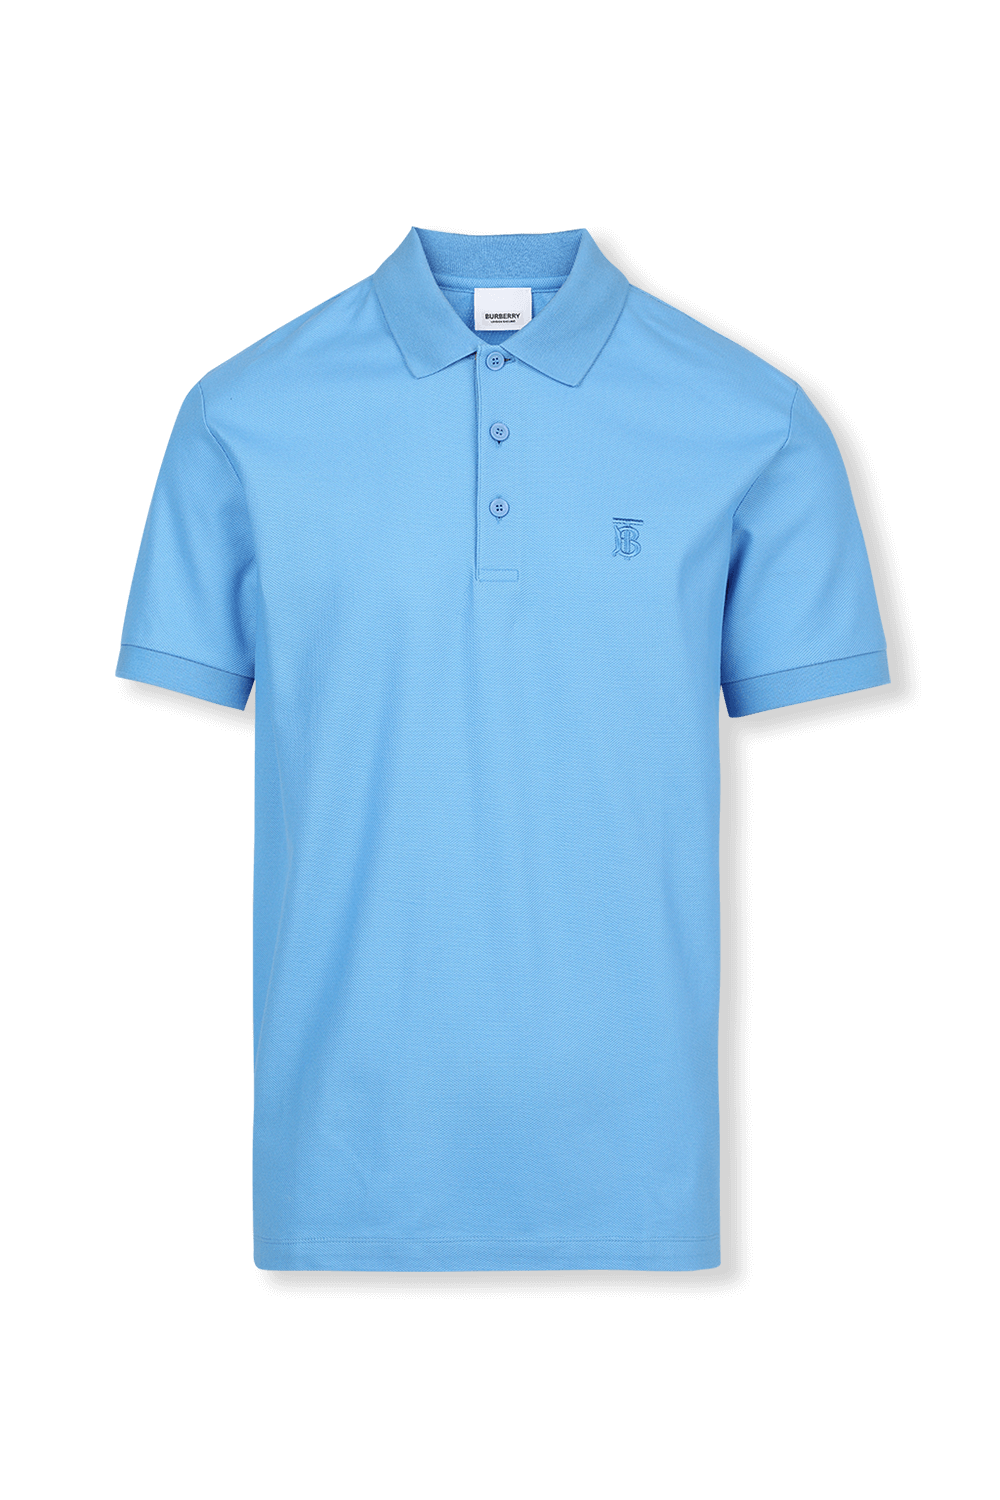 Cotton Pique Polo Shirt In Sky Blue BURBERRY